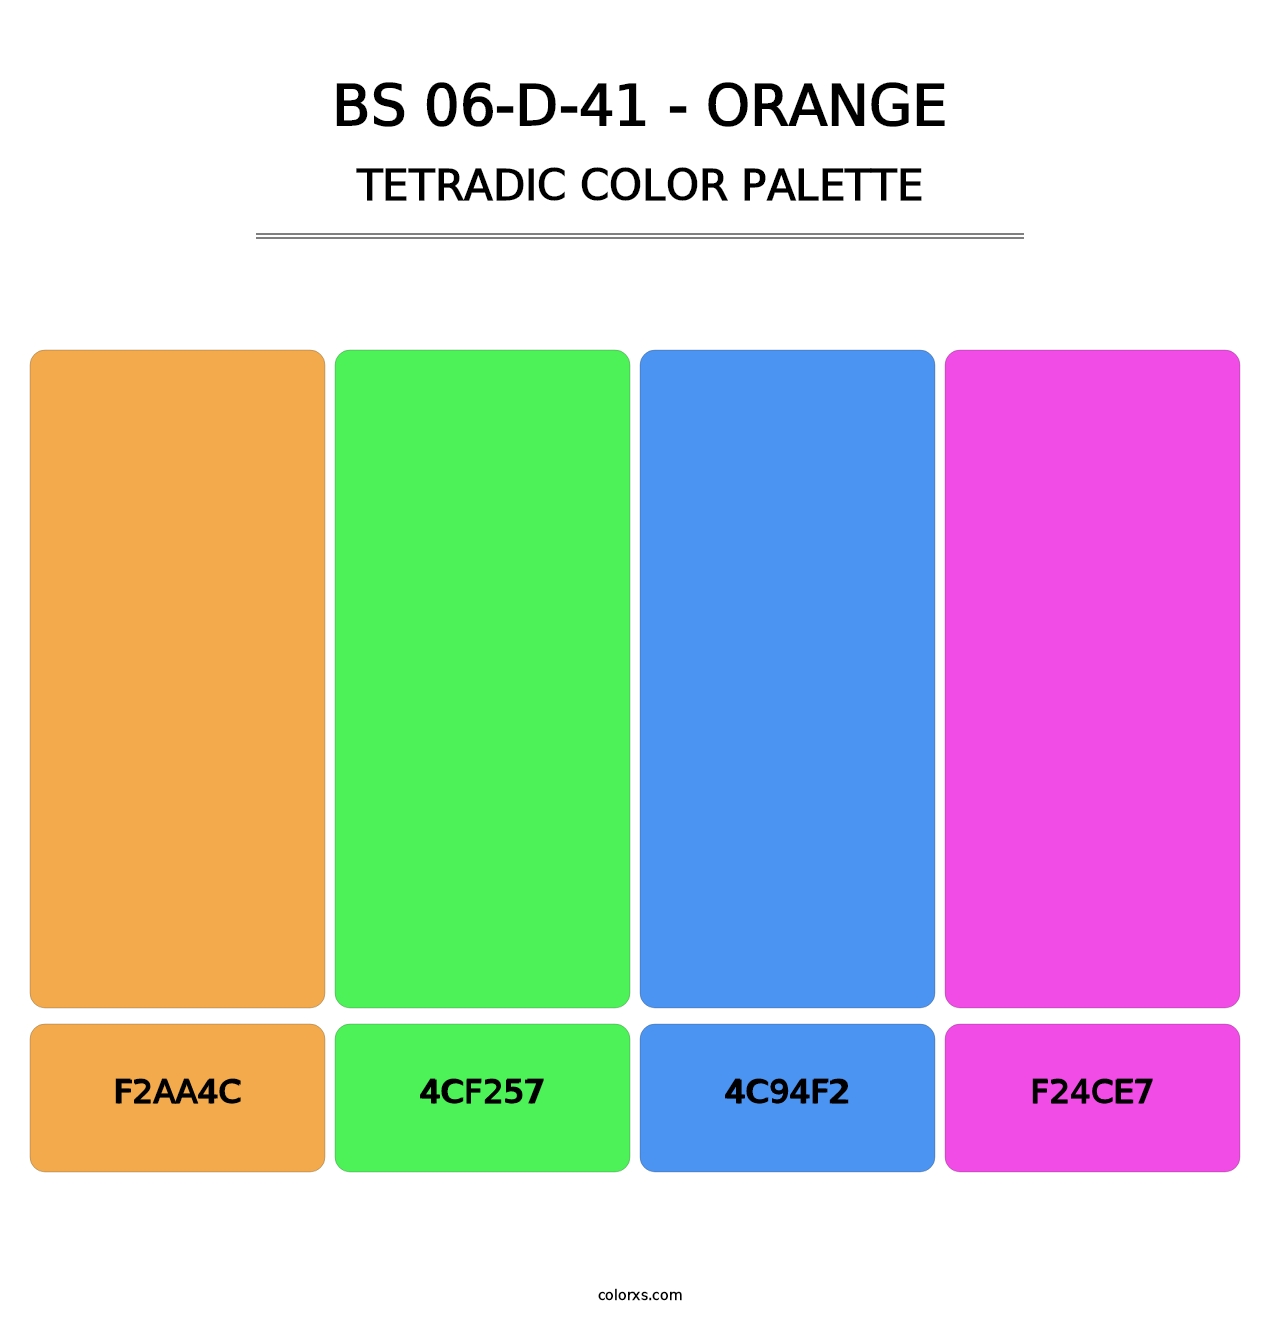 BS 06-D-41 - Orange - Tetradic Color Palette